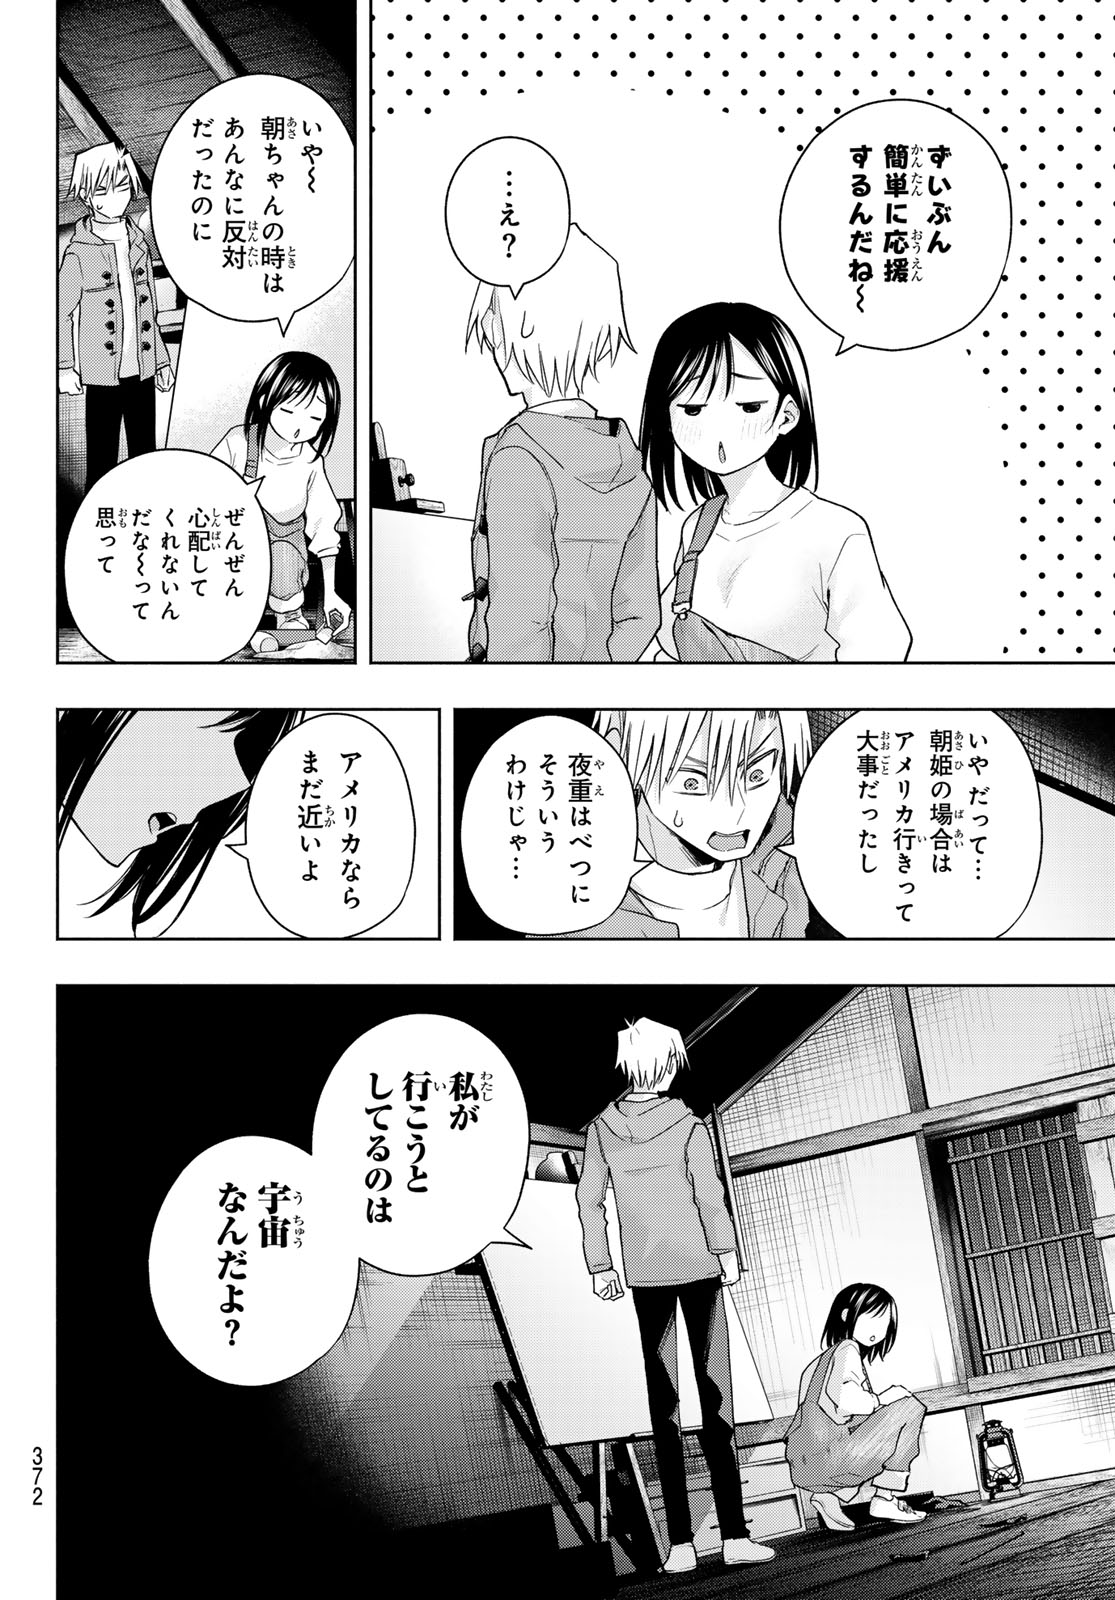 Amagami-san Chi no Enmusubi - Chapter 139 - Page 14